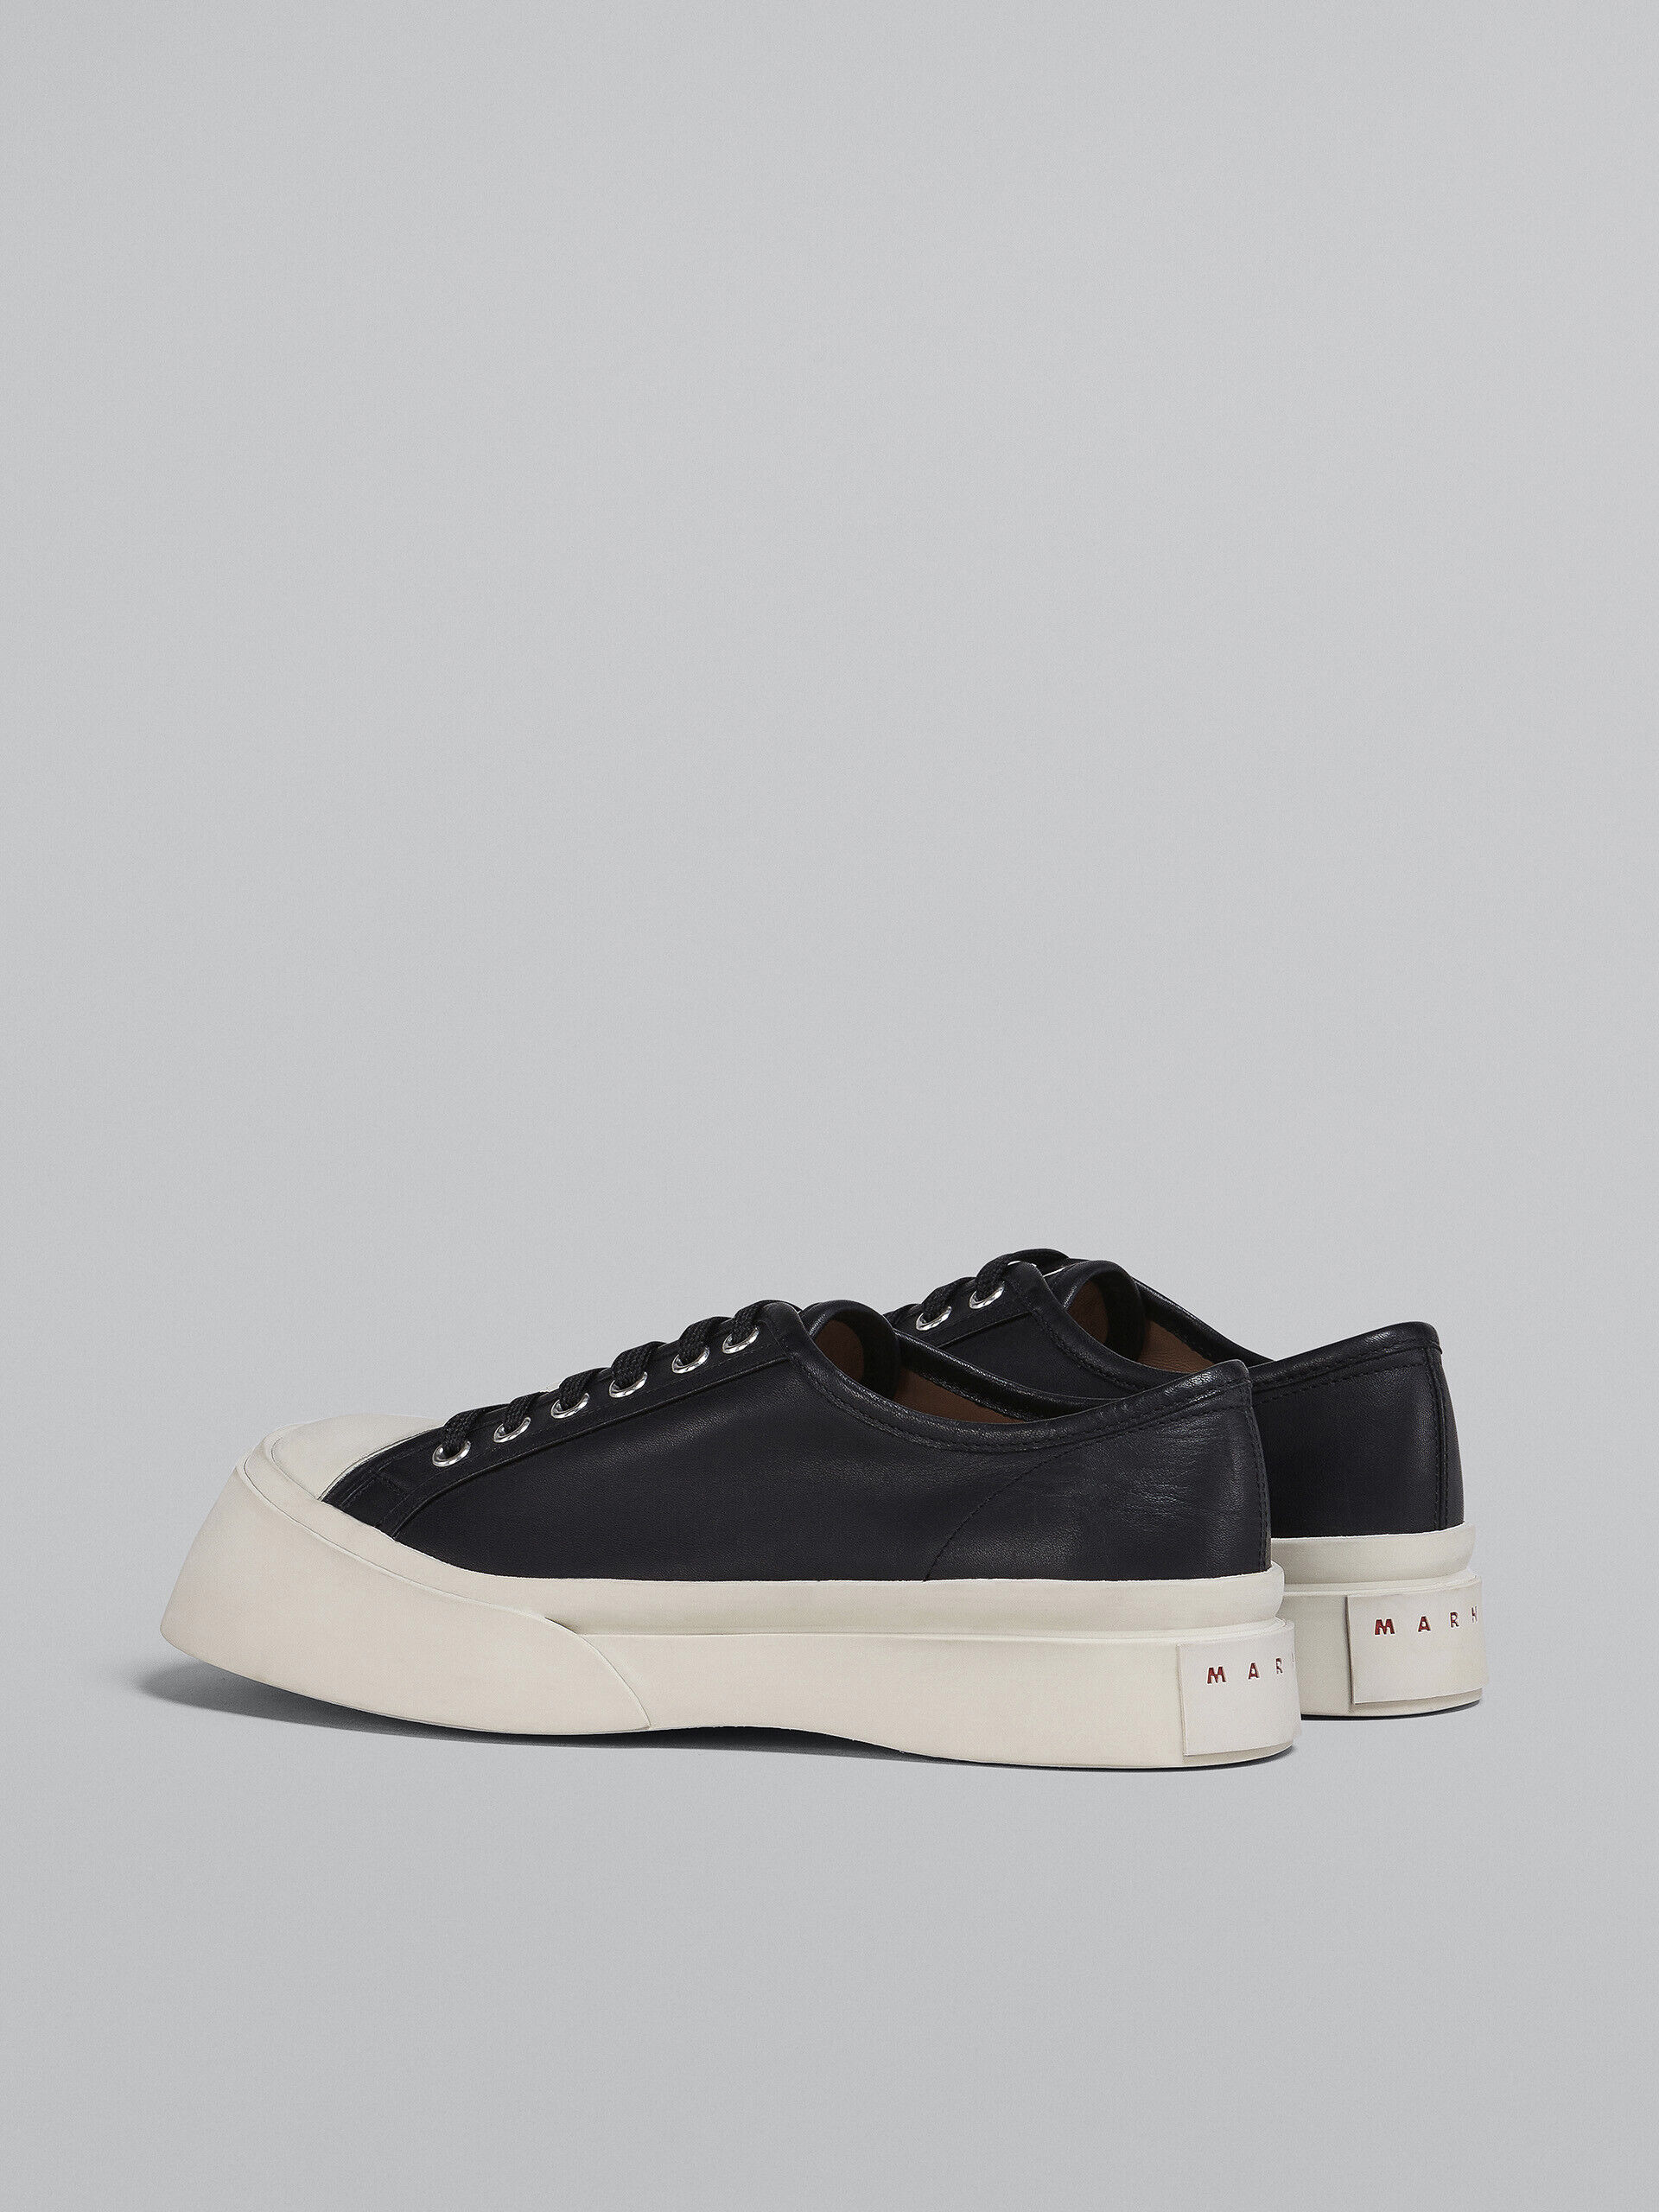 Black nappa leather Pablo sneaker | Marni